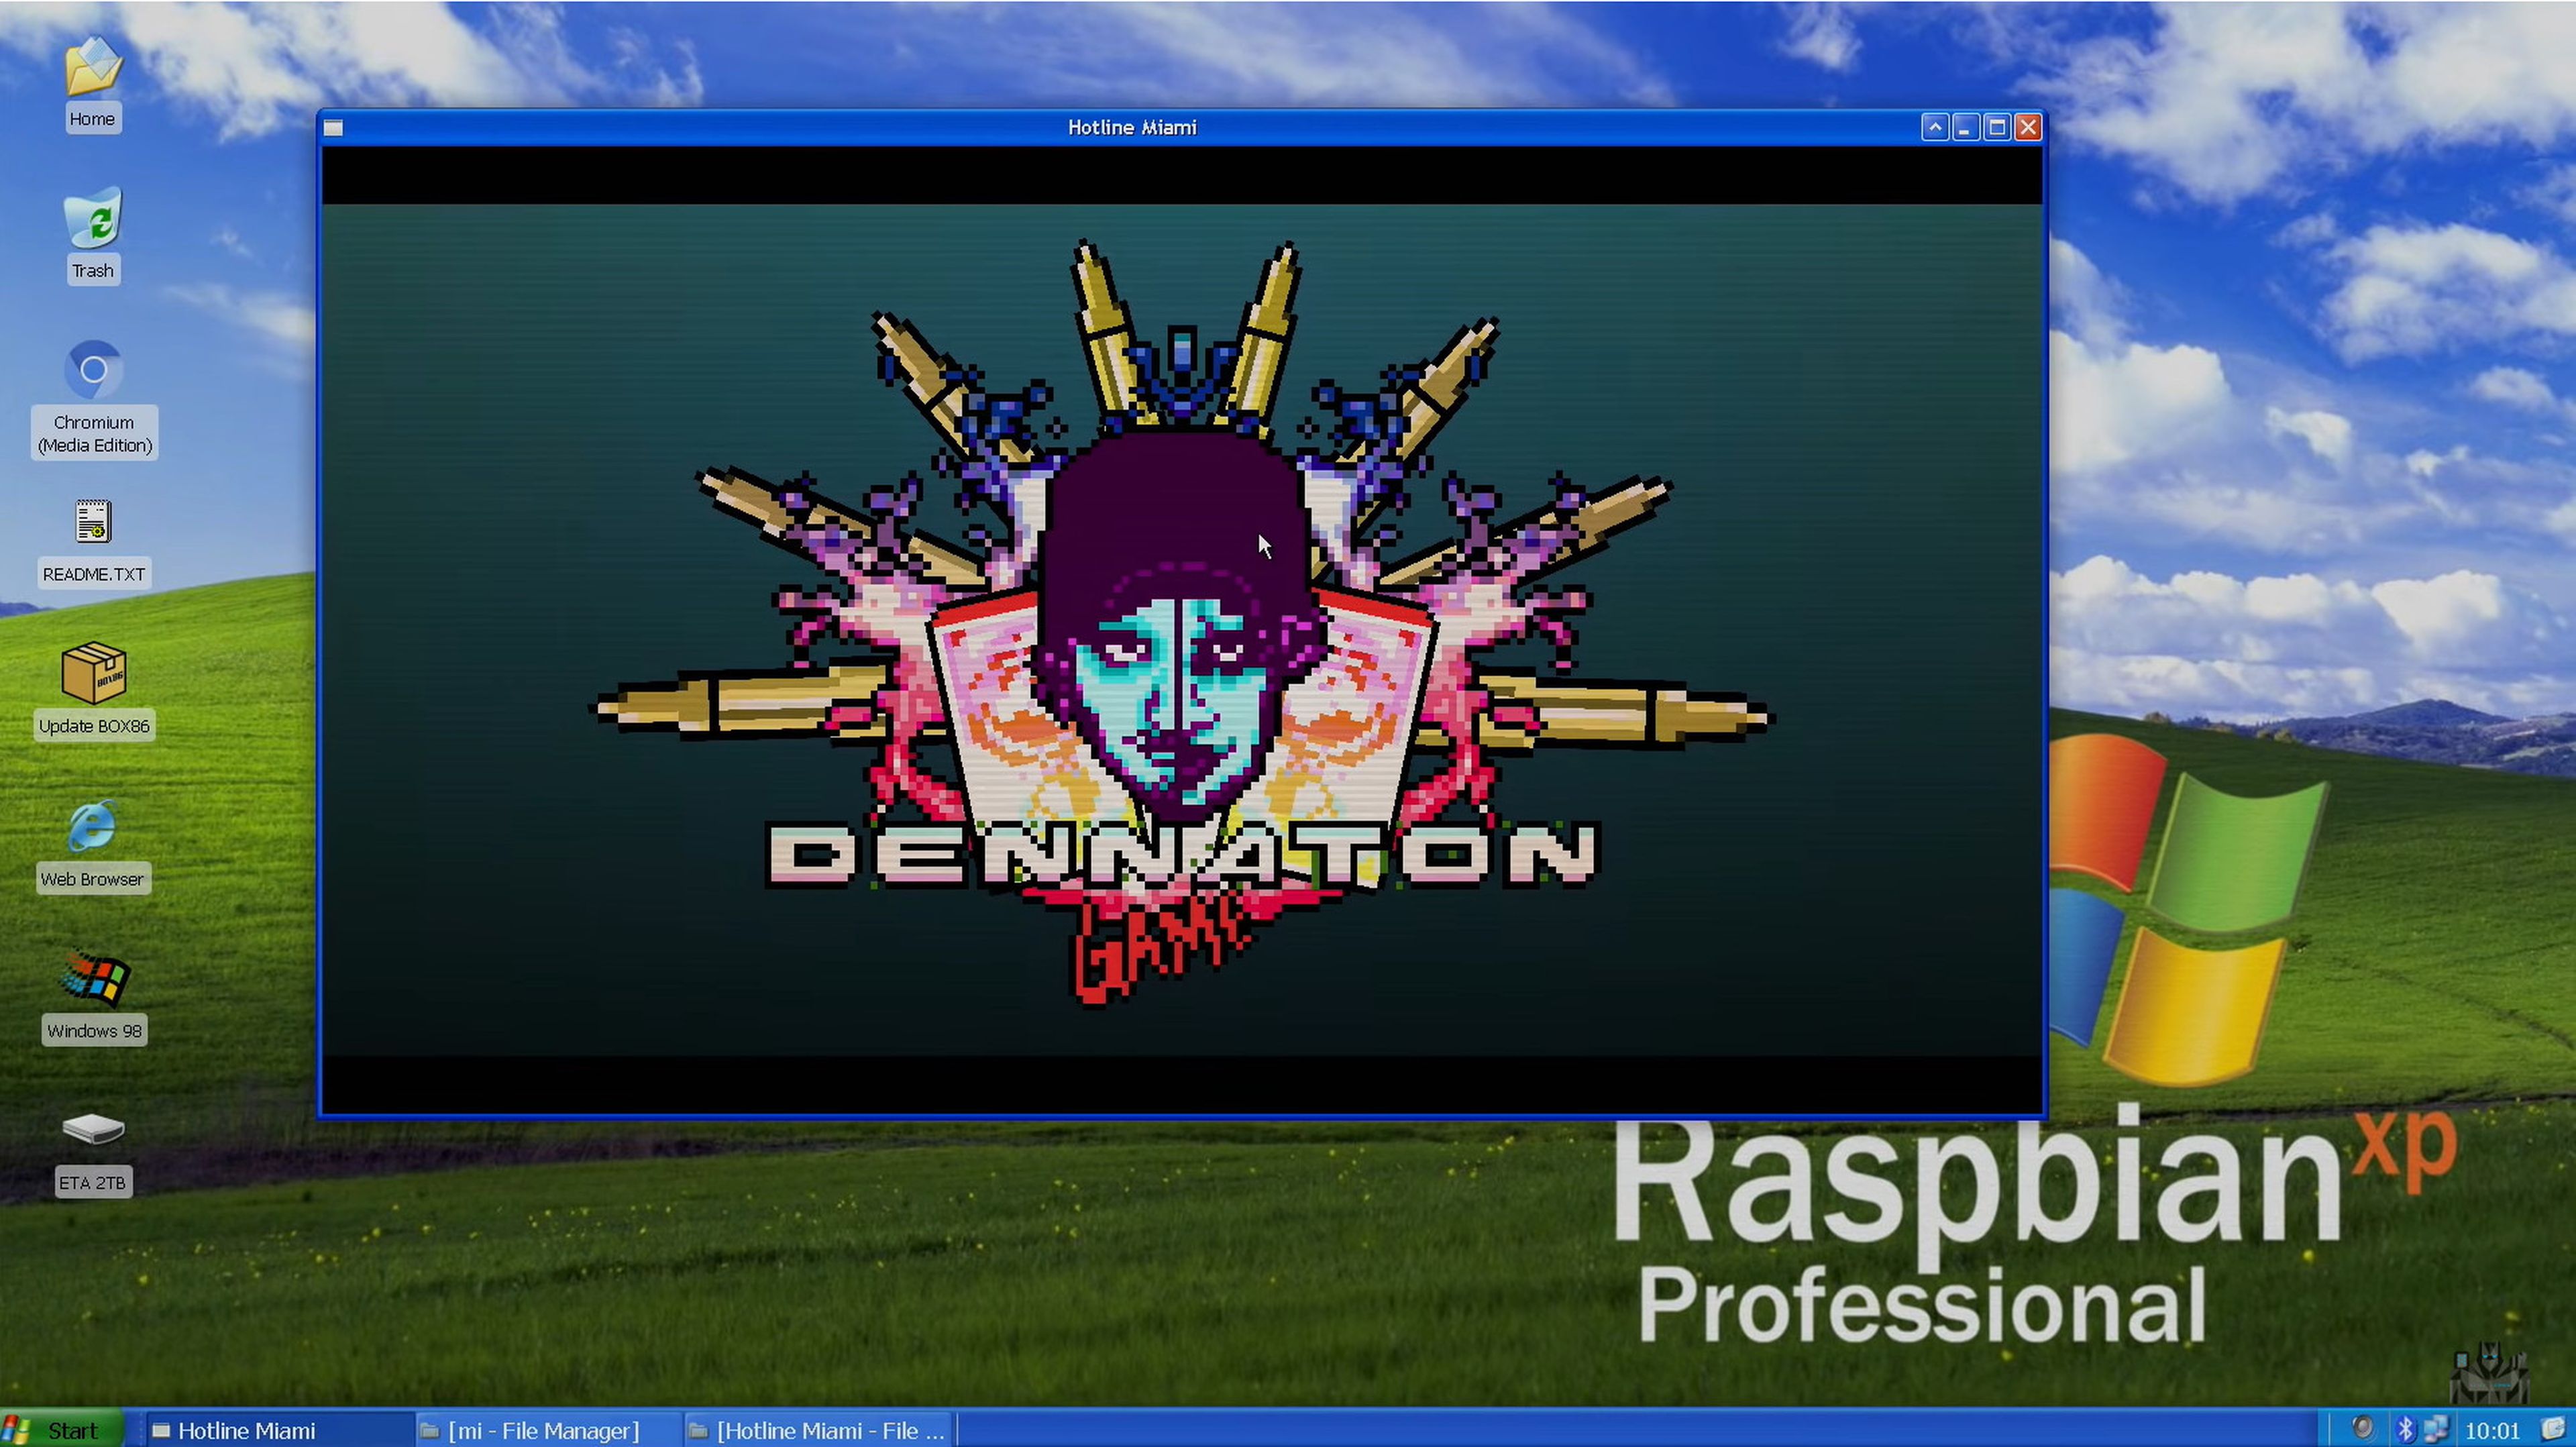 Raspbian XP